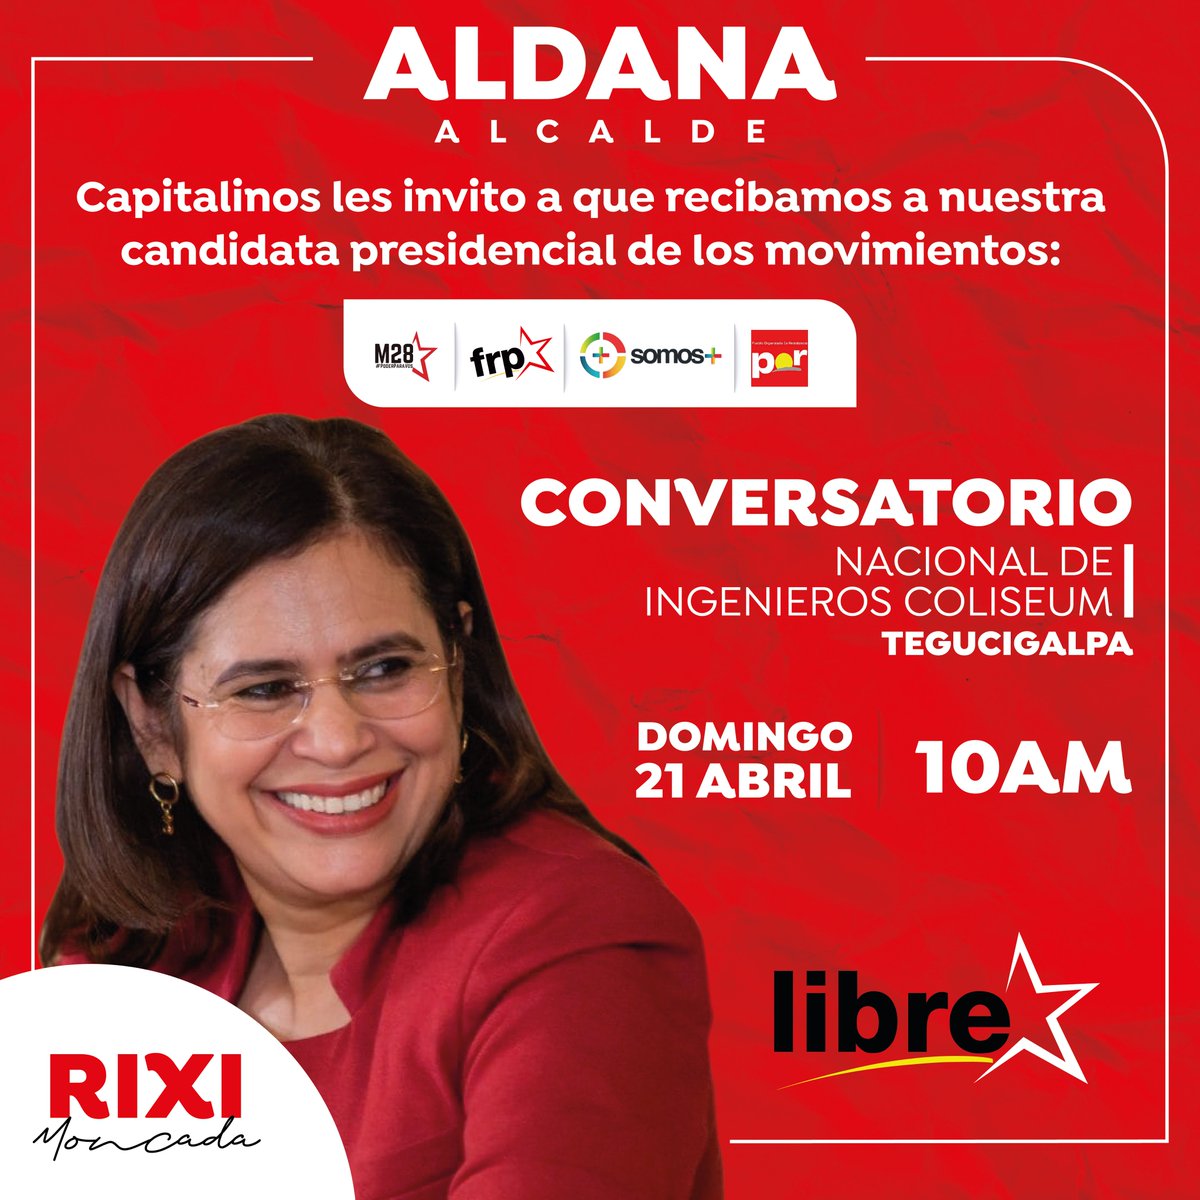 Capitalinos, este domingo recibamos y conversemos con nuestra candidata presidencial @riximga. Vamos juntos en unidad y por la próxima victoria popular. 🌺